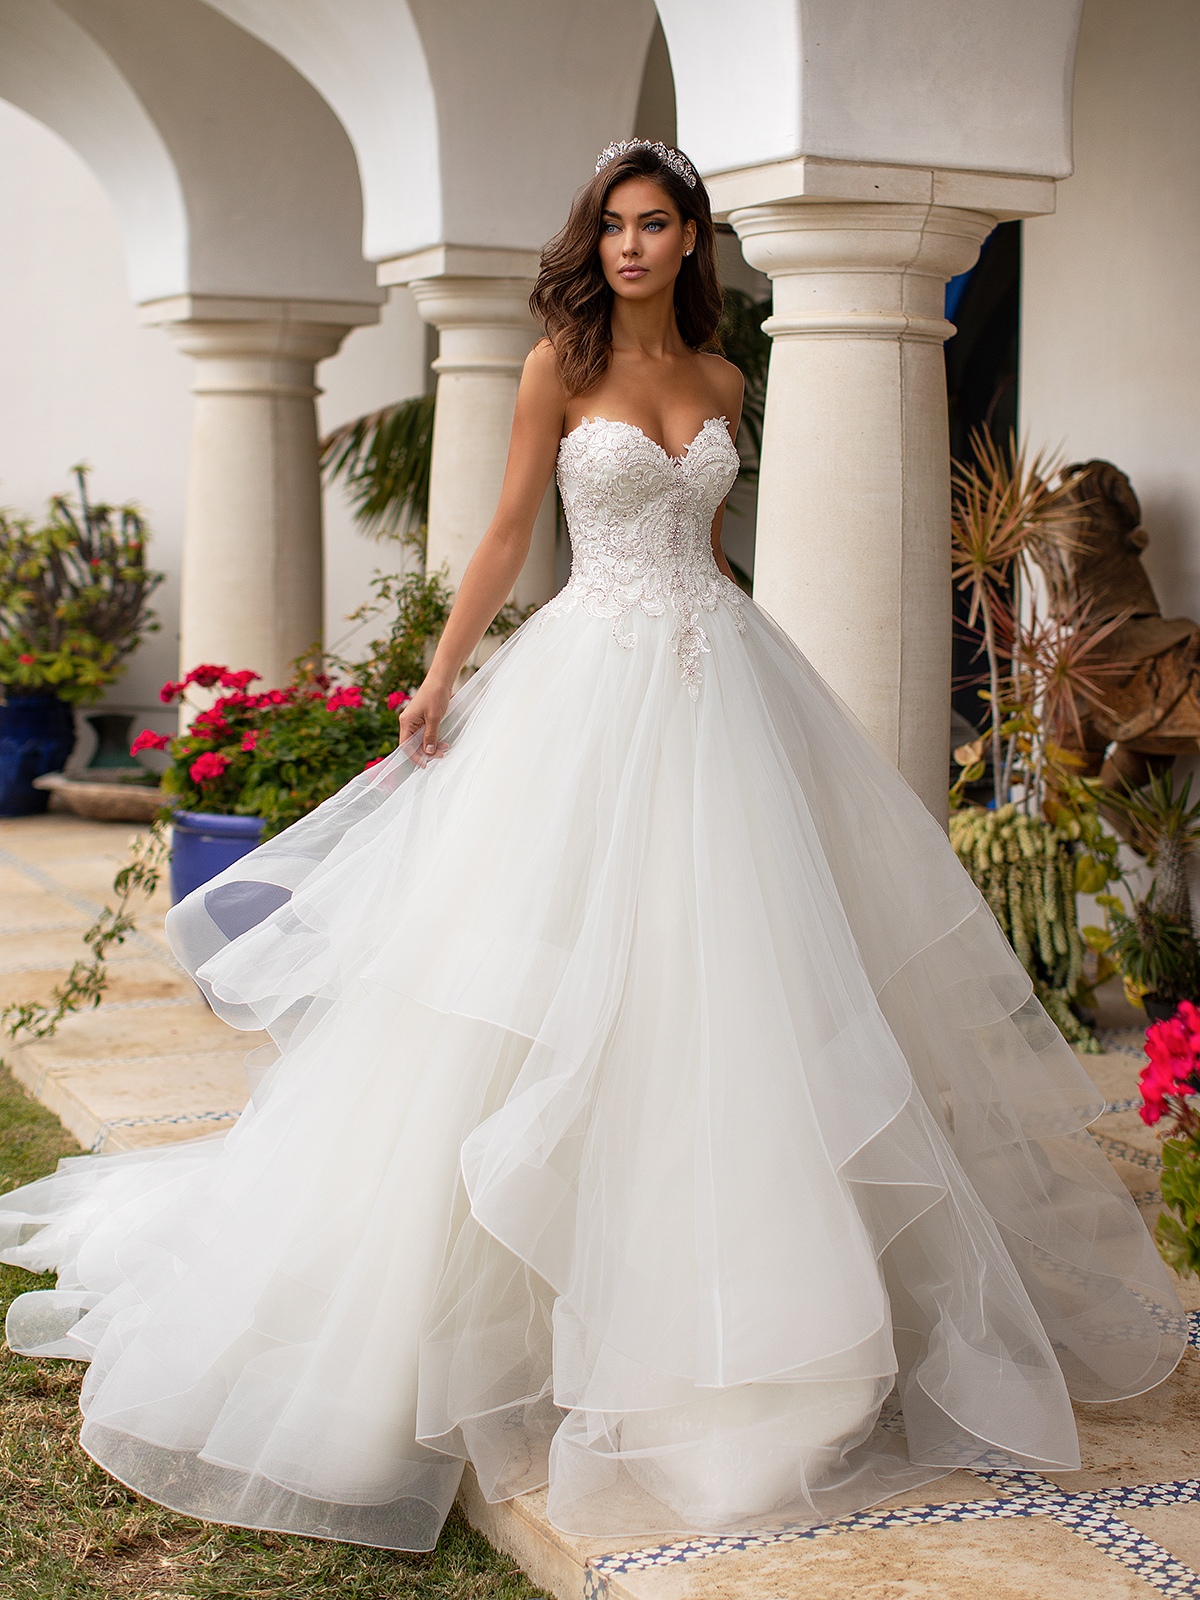 Fairytale Romance Lace Applique A-line Wedding Dress  A-line wedding  dress, Ivory wedding dress, Ball dresses